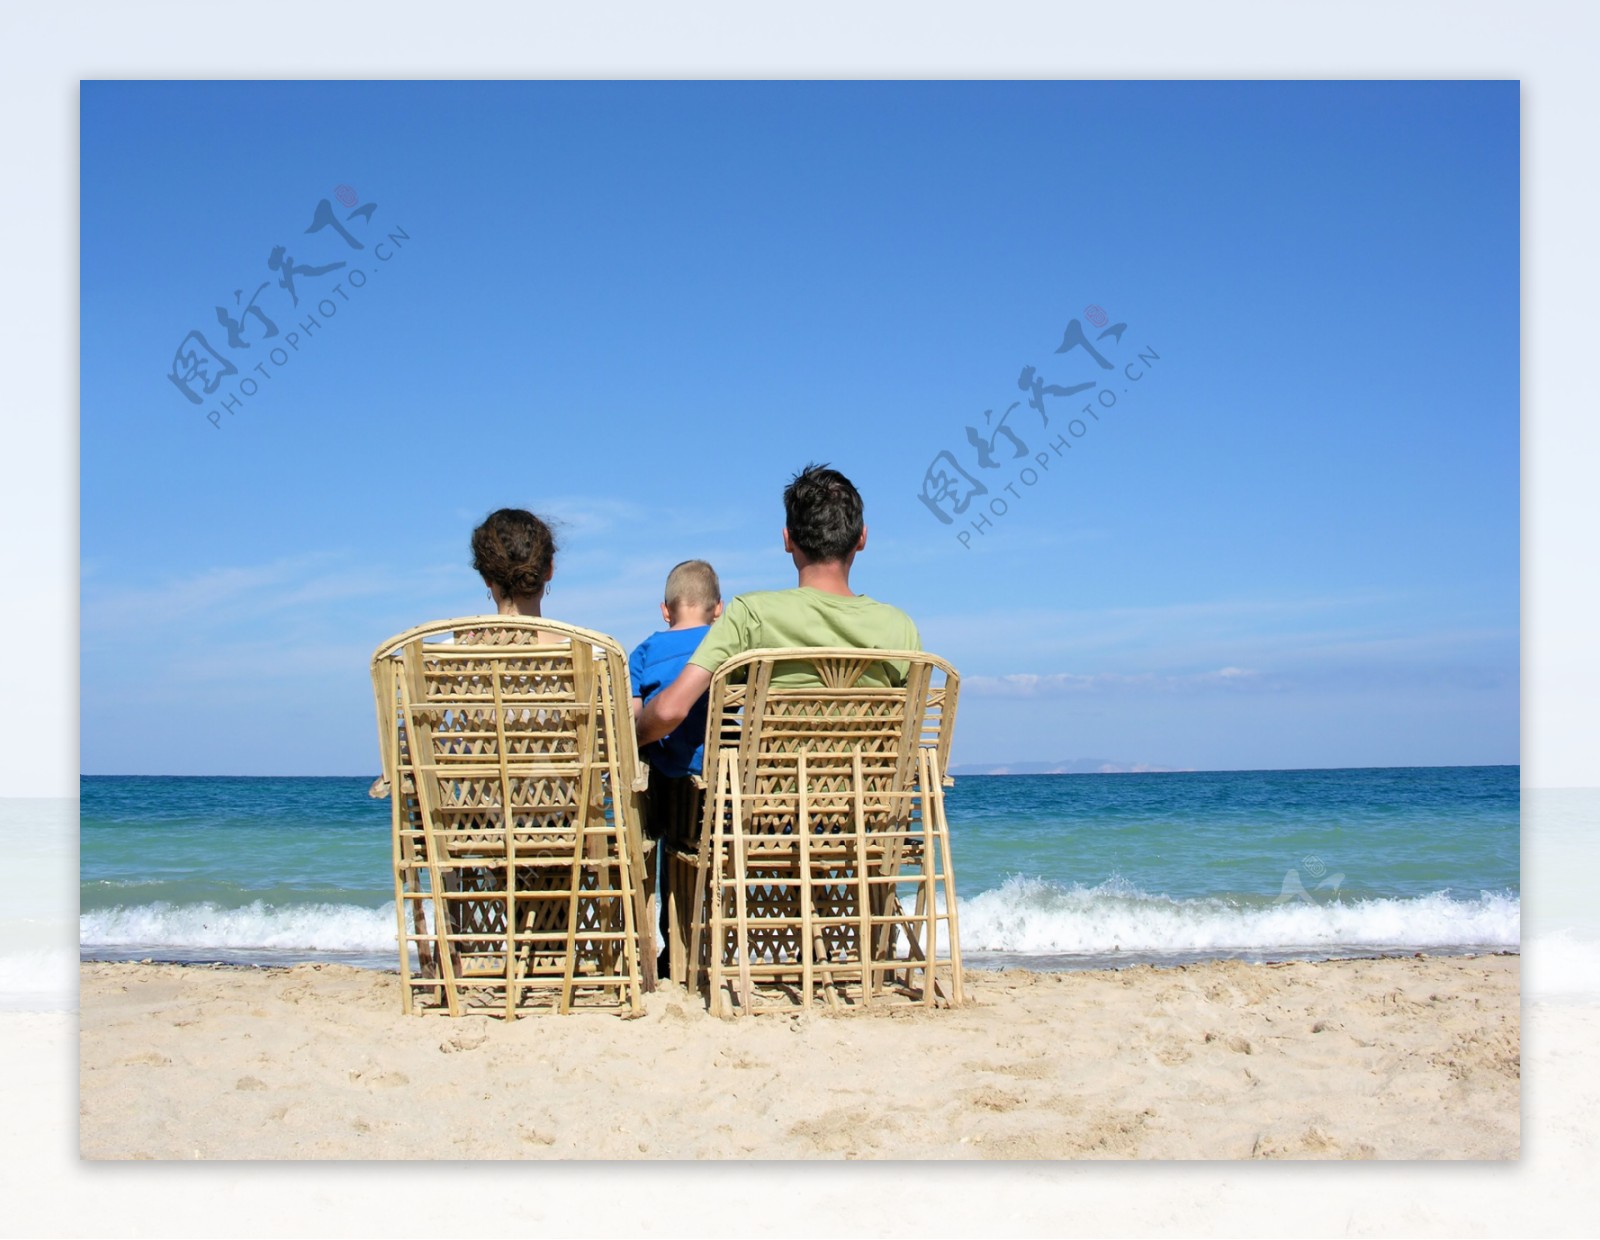 坐在椅子上看海的一家人图片